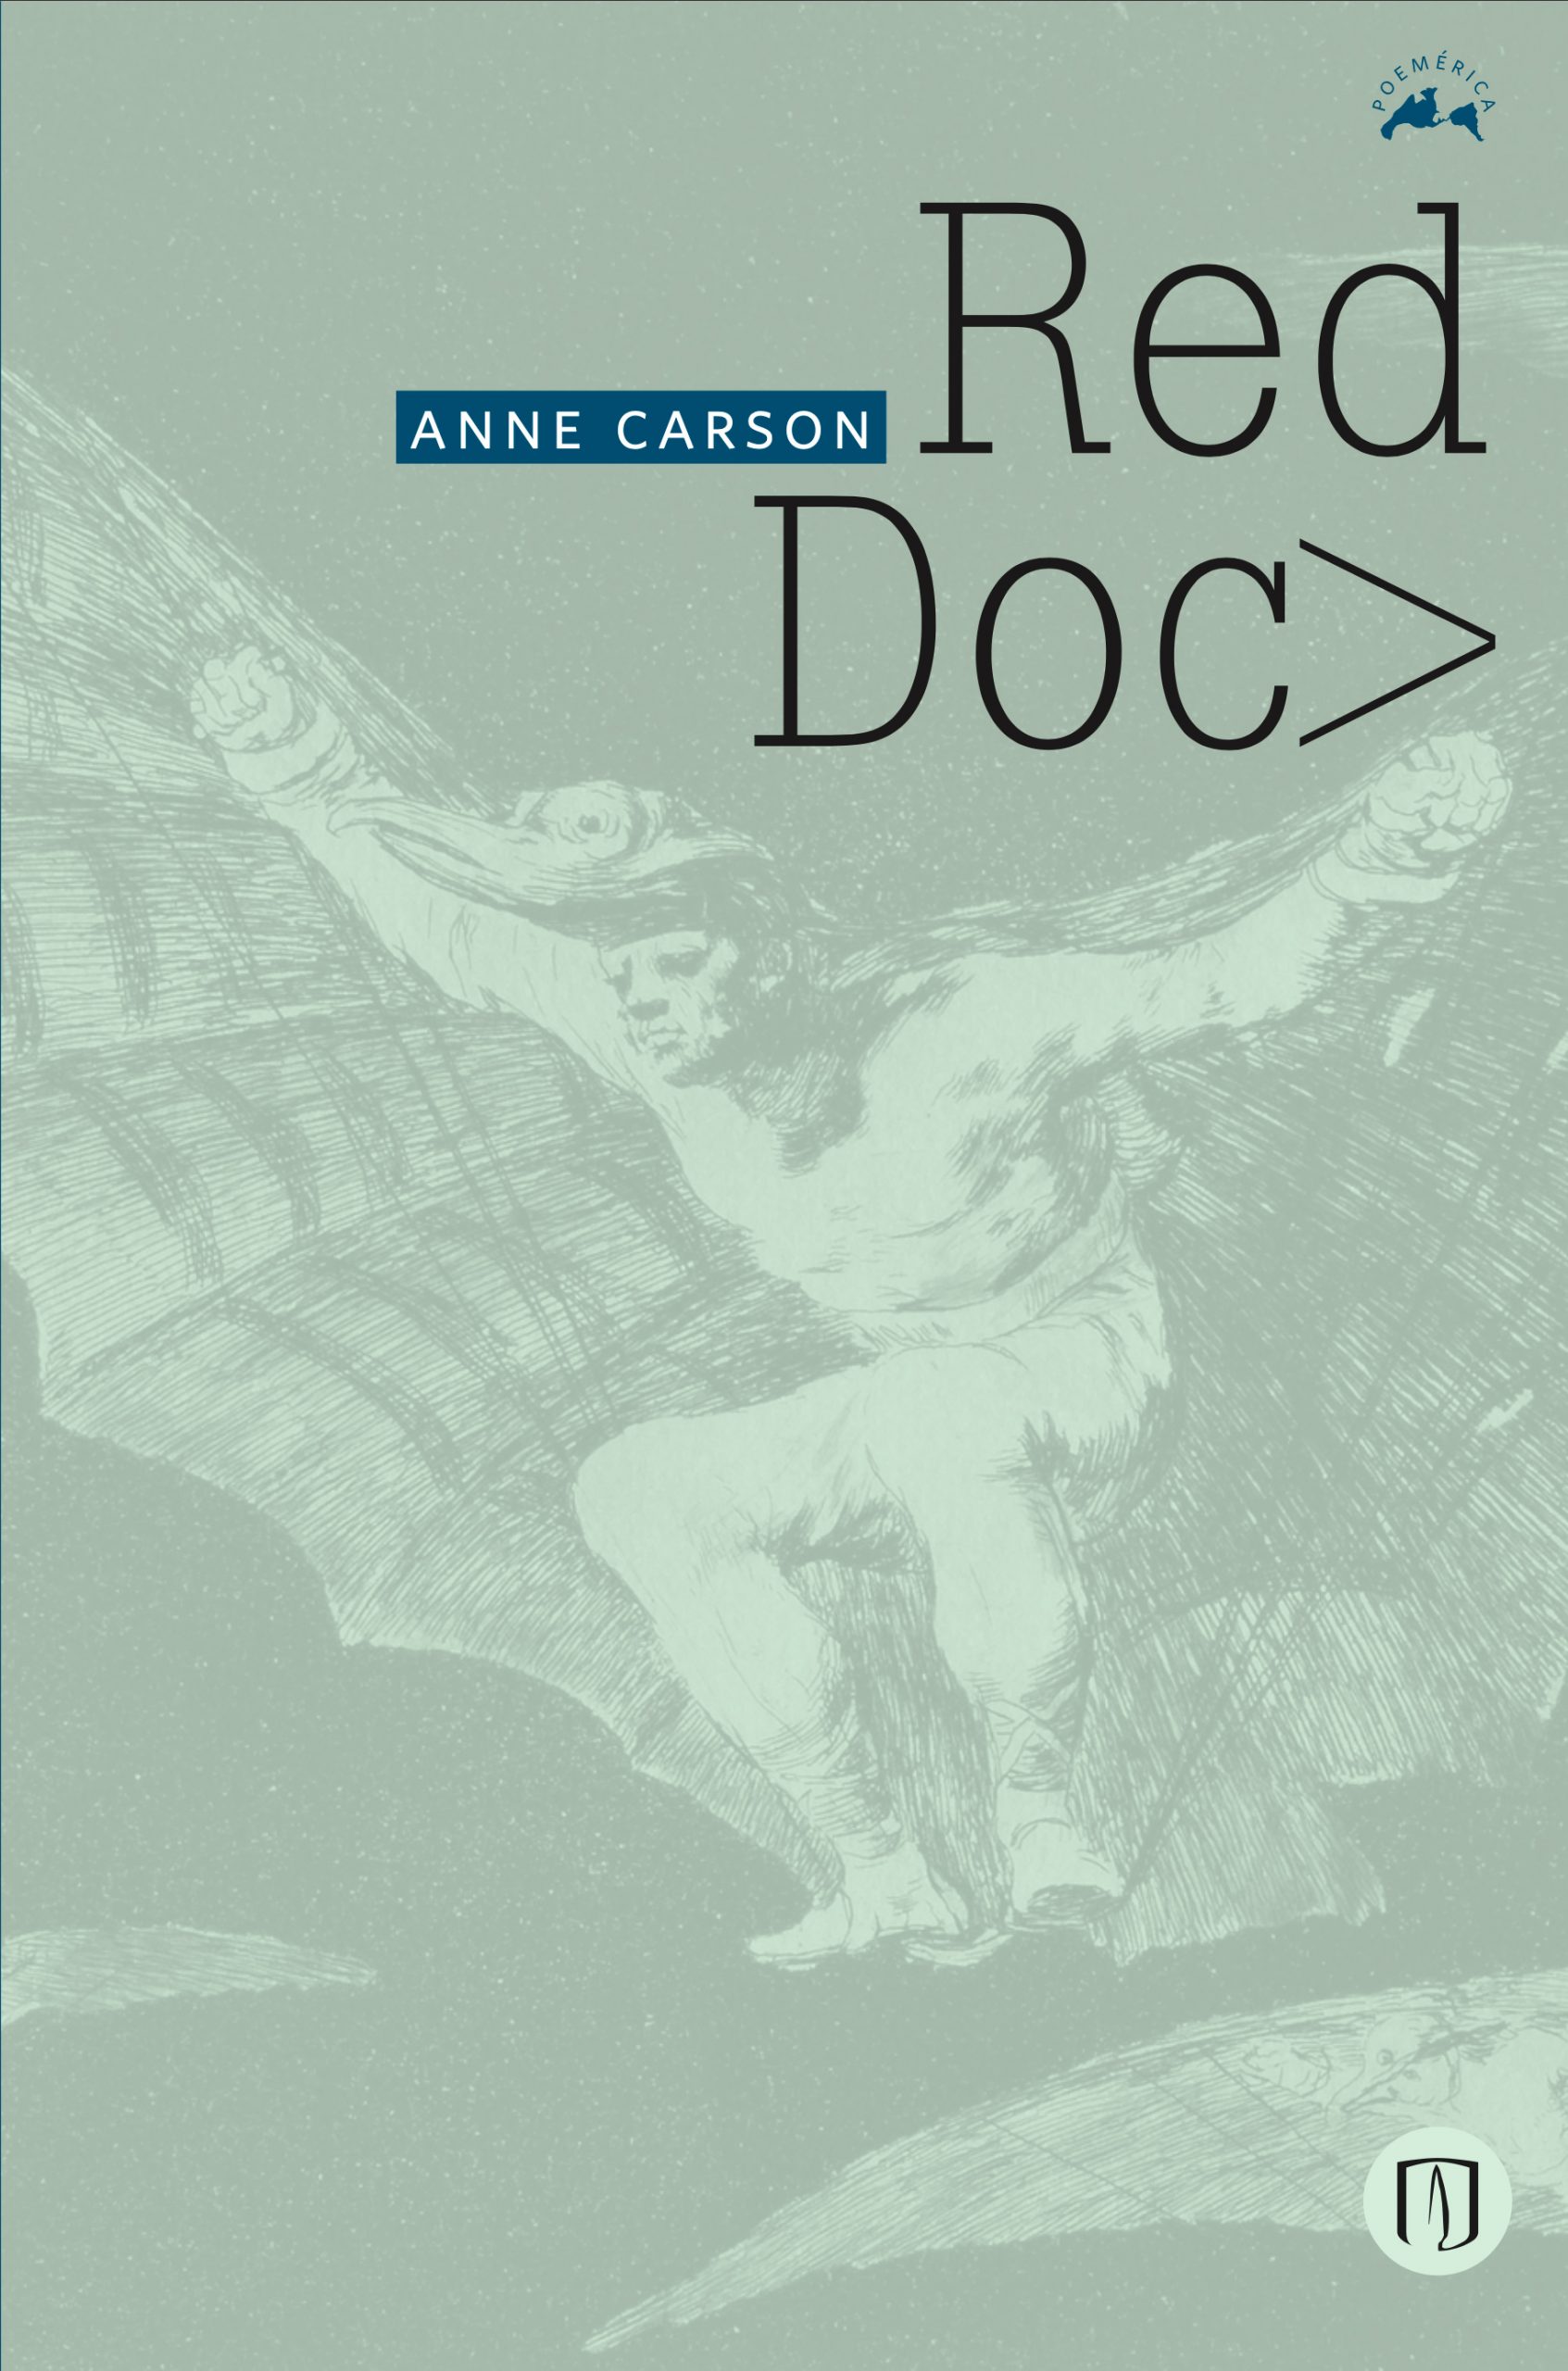 Anne Carson, autora de Red Doc>, publicado en la colección Poemérica, obtuvo el premio Princesa de Asturias